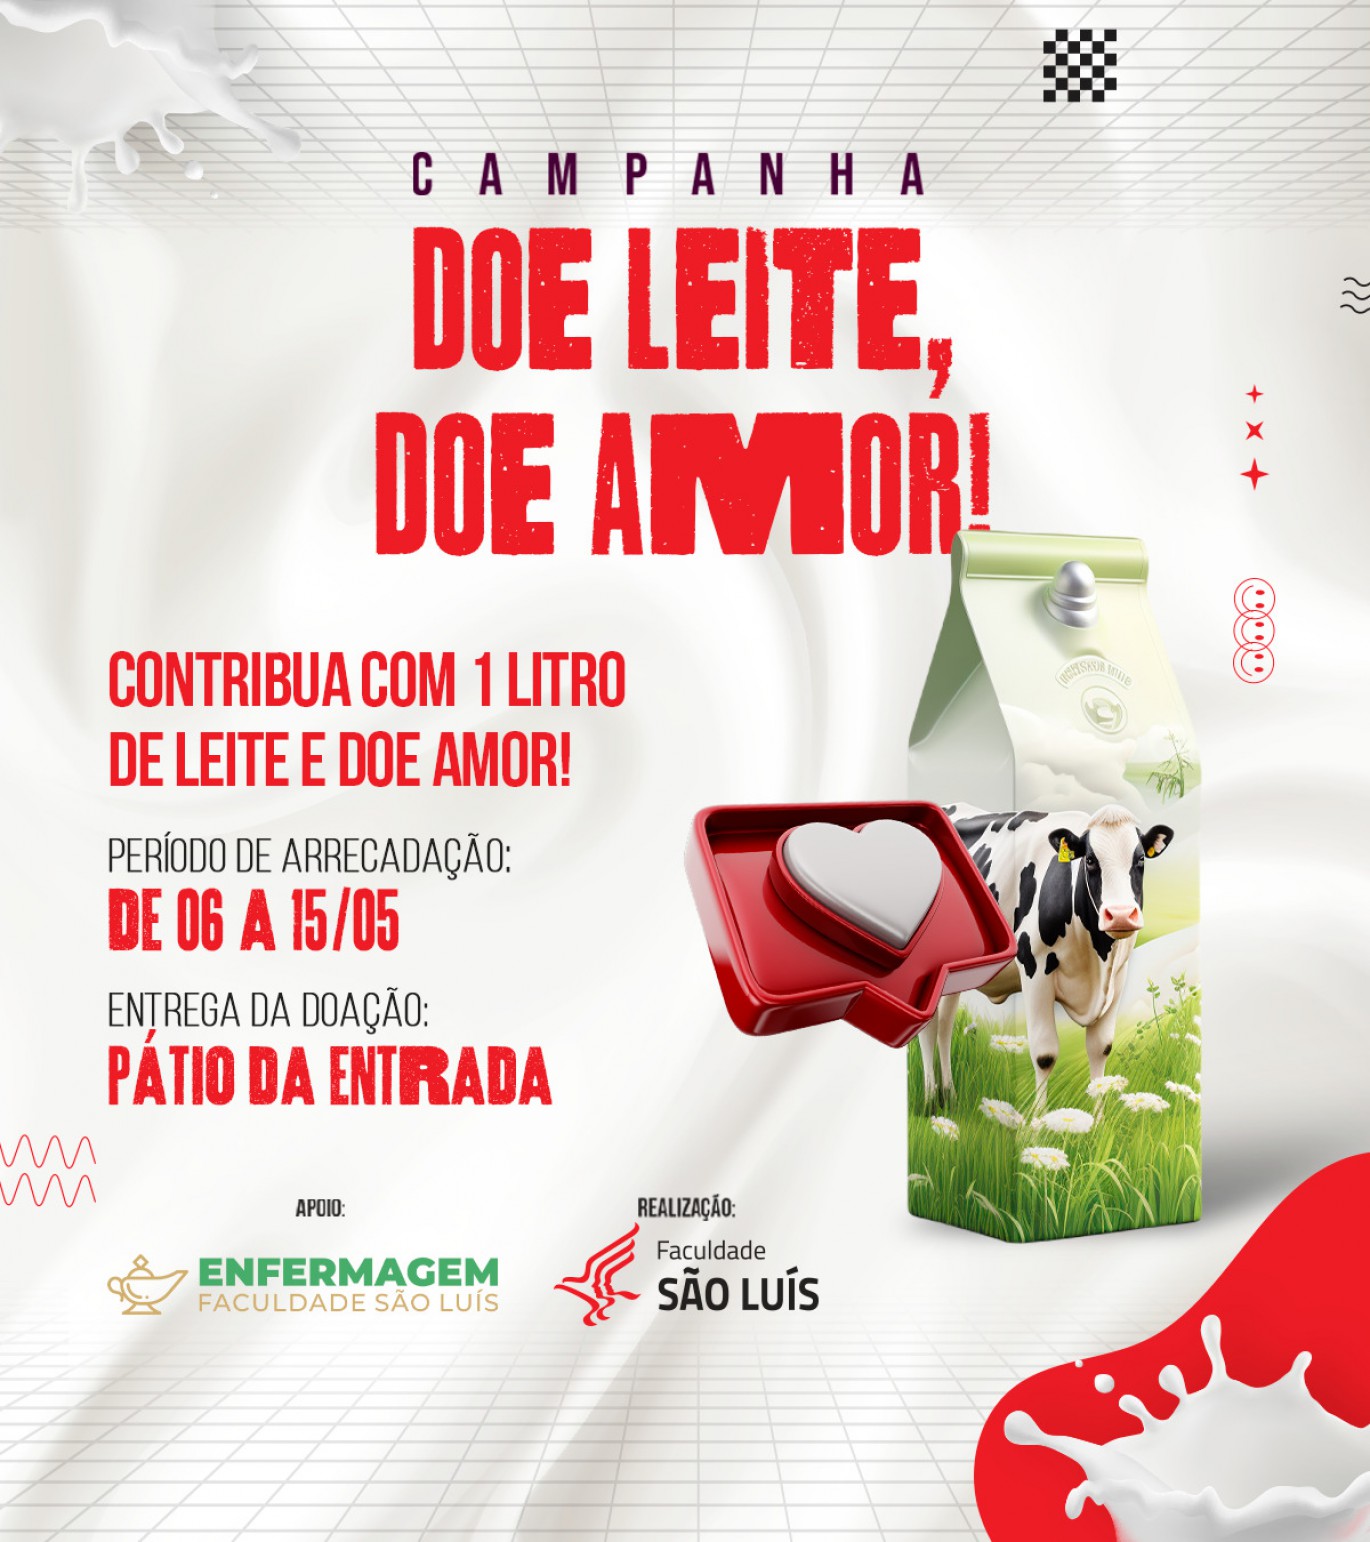 Campanha Doe Leite Doe Amor, arrecadação de leite acontece de 06 a 15/05. Participe!